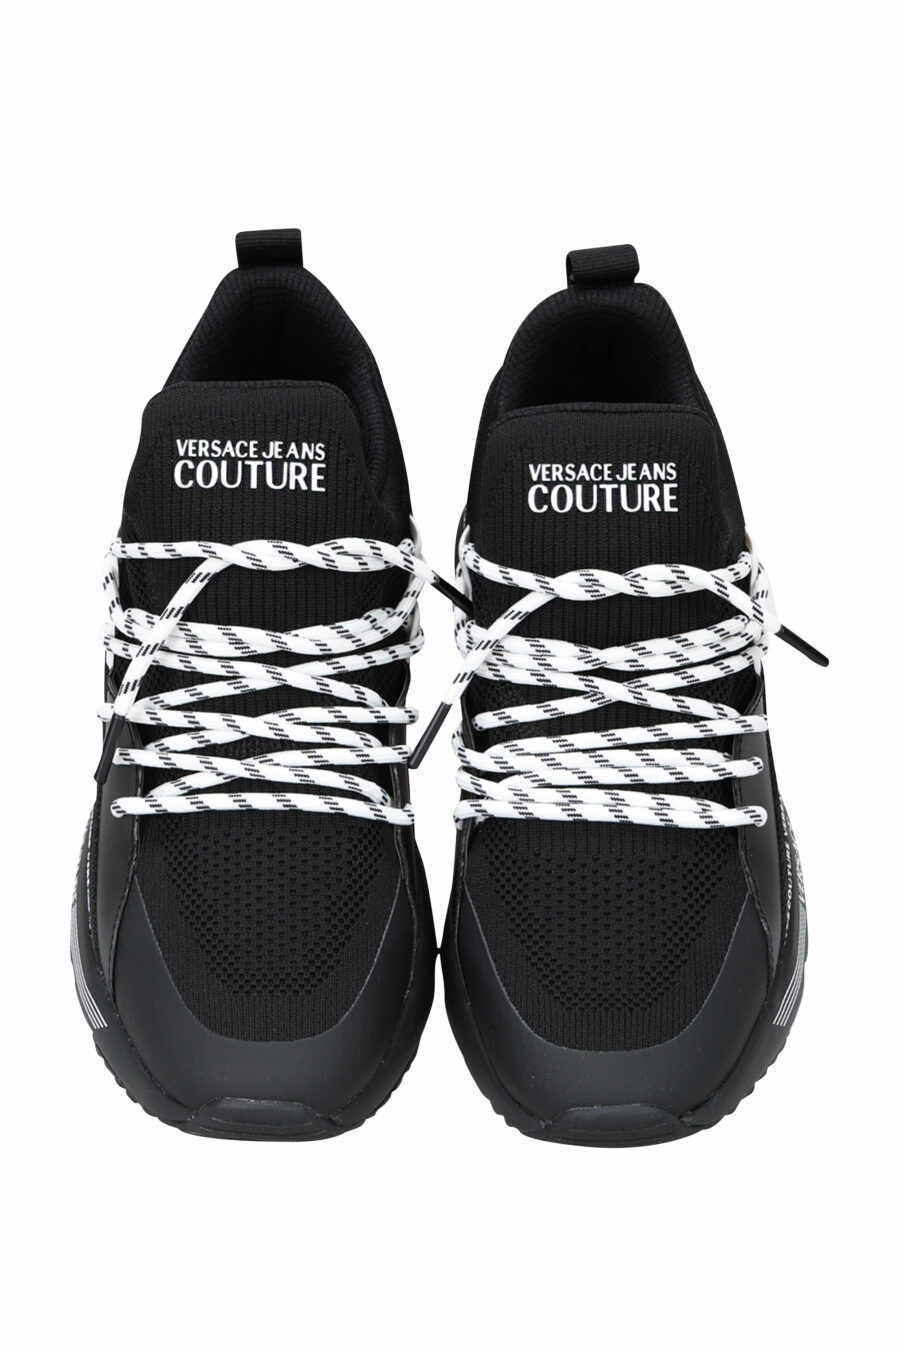 Zapatillas negras "troadlop" con logo en cinta blanco - 8052019454468 4